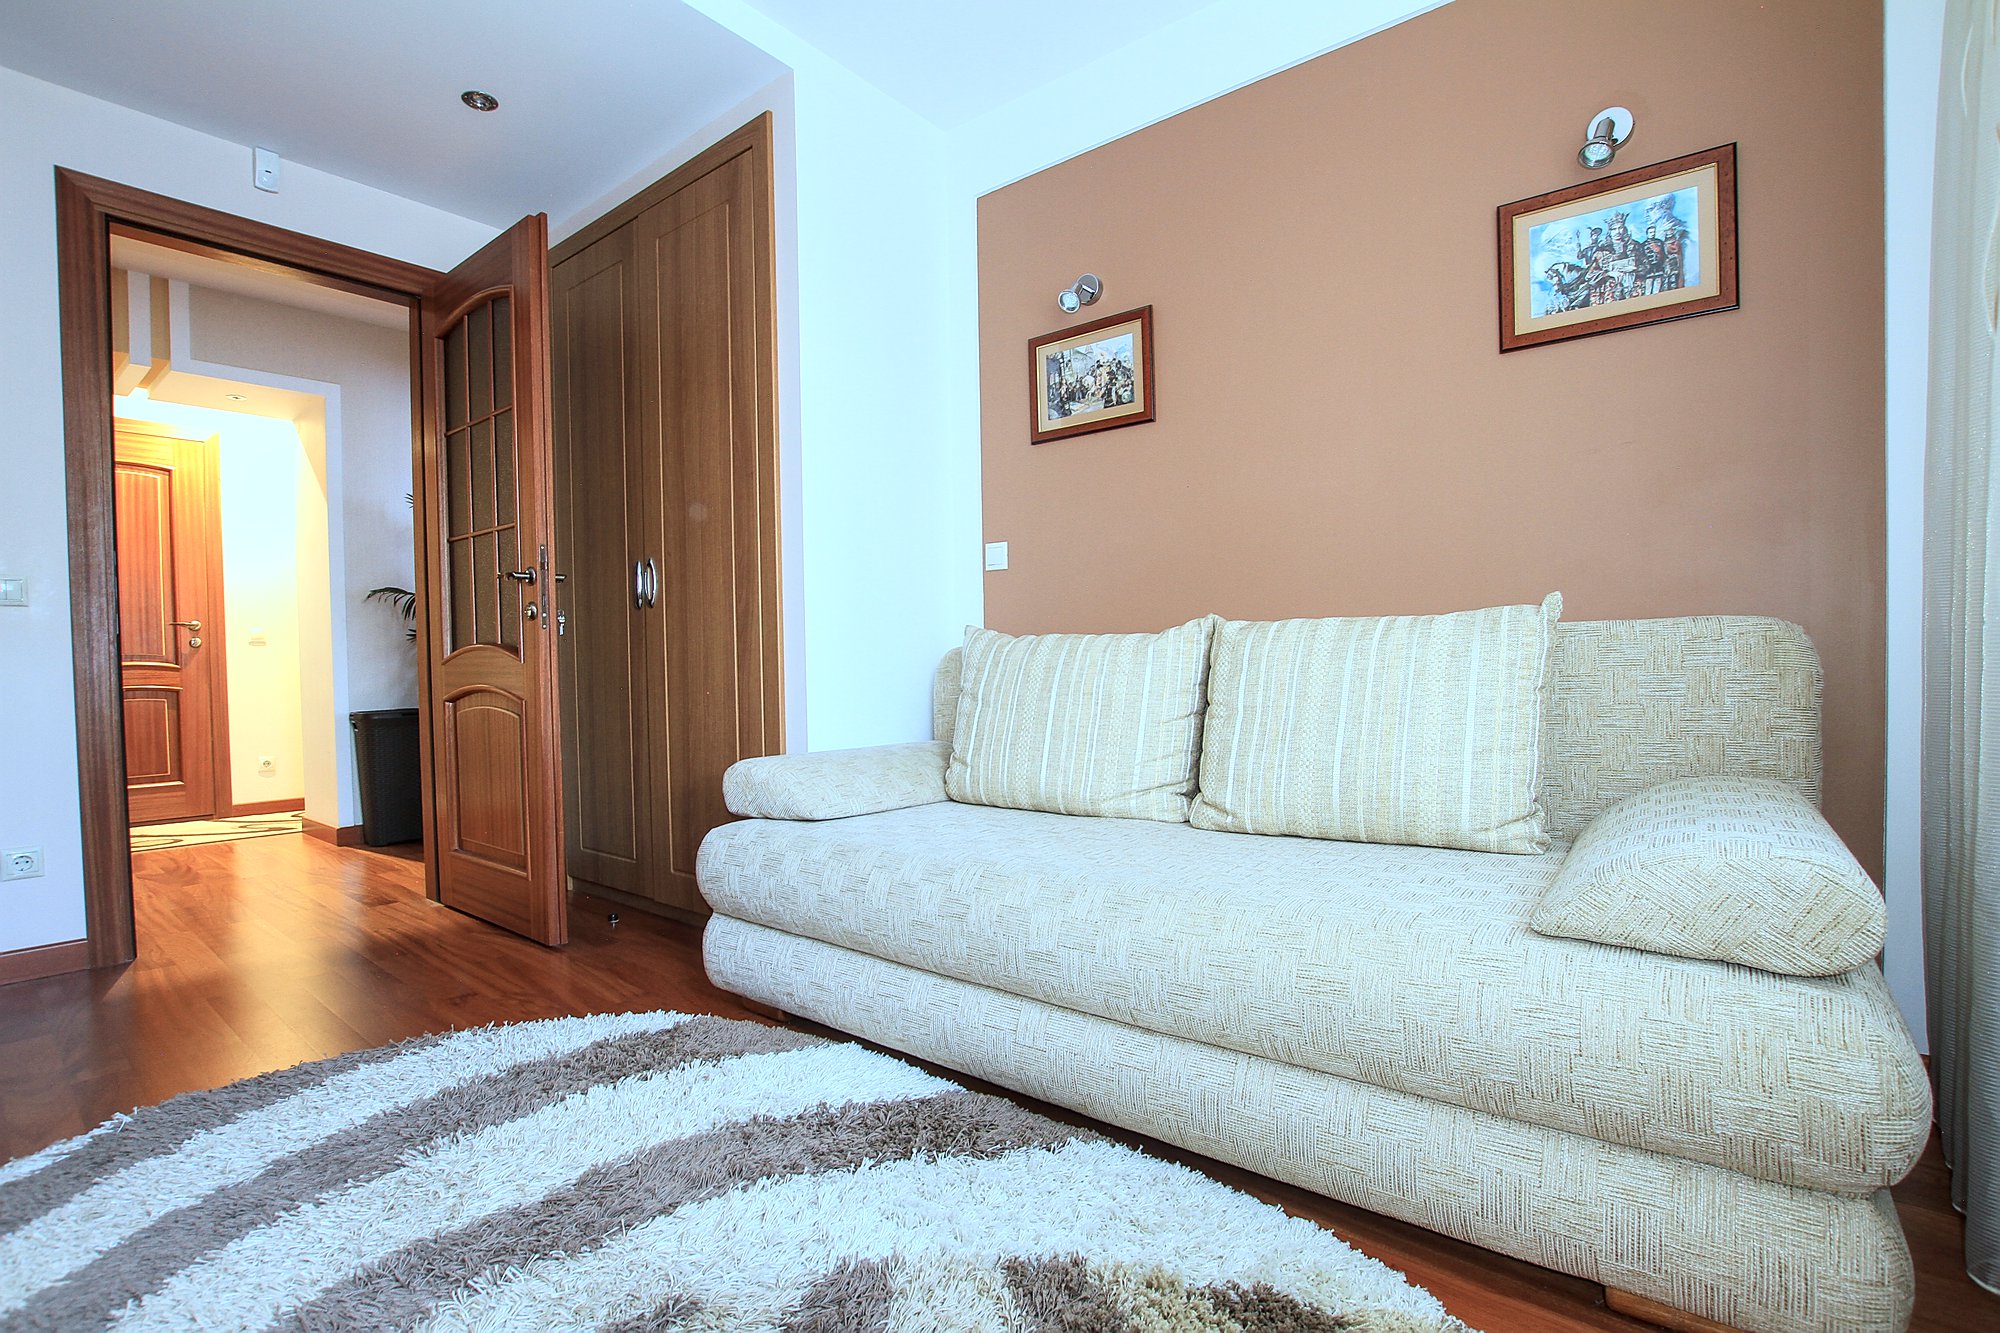 Botanica Family Apartment это квартира в аренду в Кишиневе имеющая 3 комнаты в аренду в Кишиневе - Chisinau, Moldova